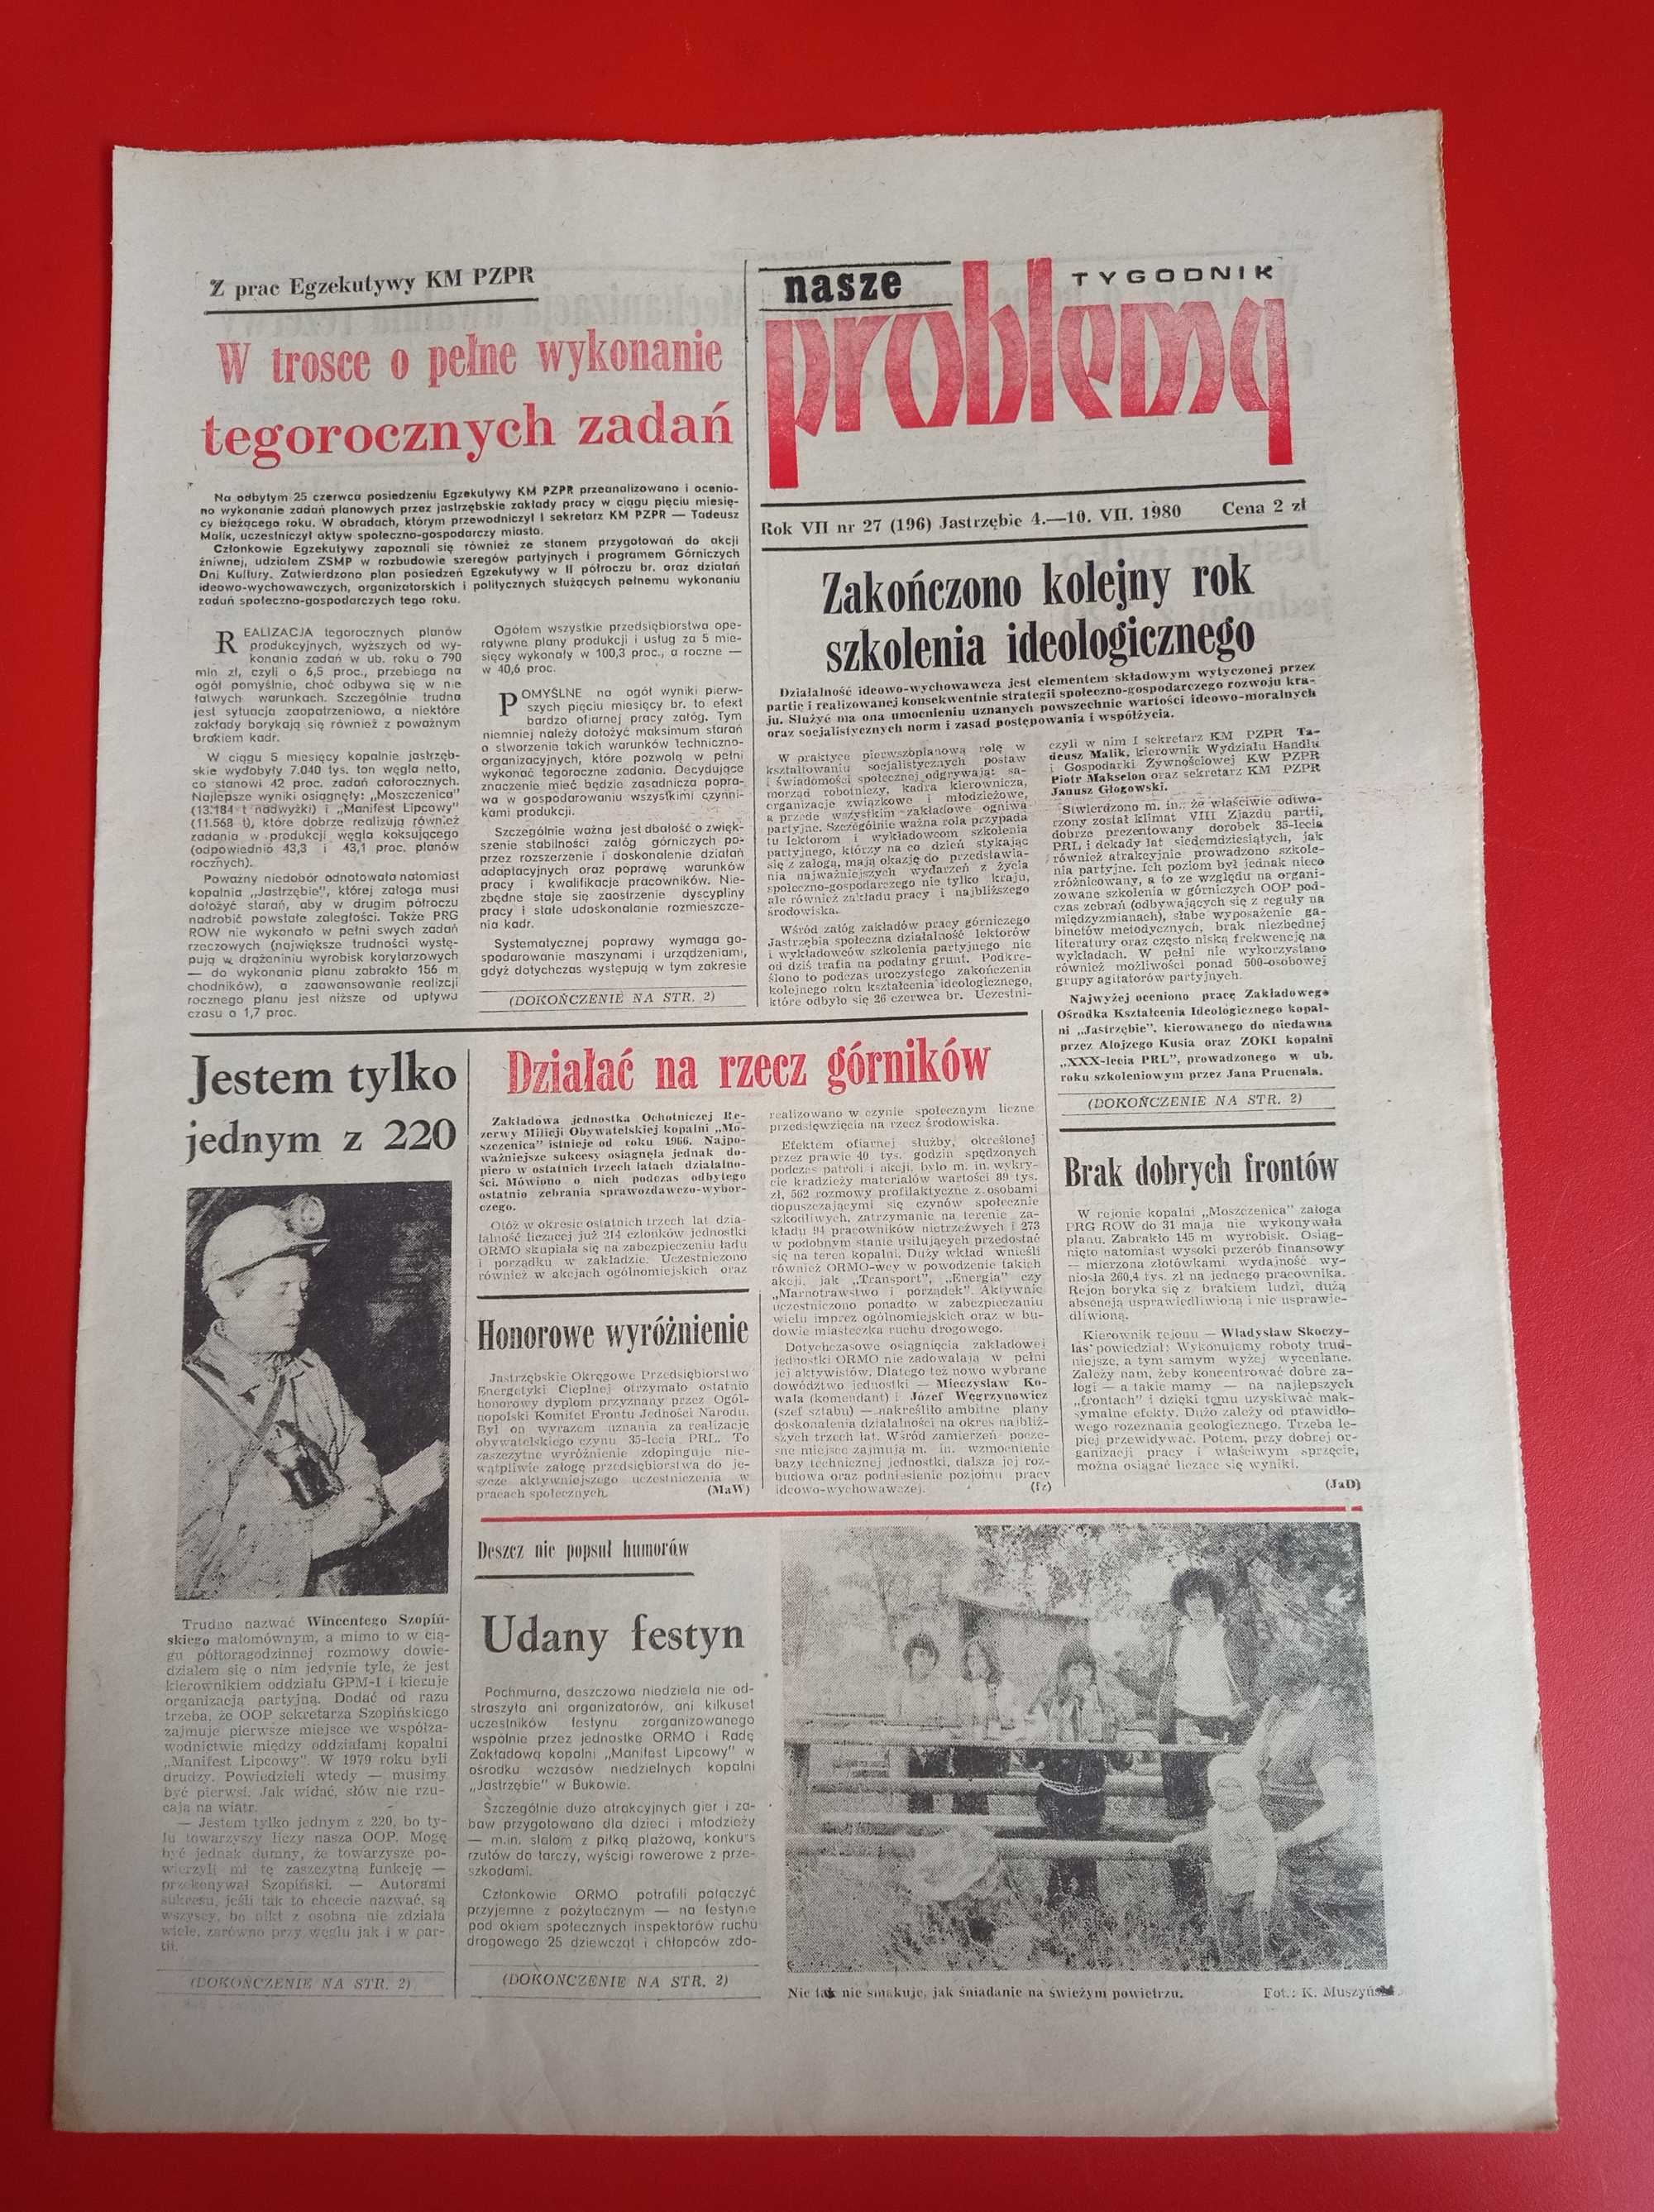 Nasze problemy, Jastrzębie, nr 27, 4-10 lipca 1980